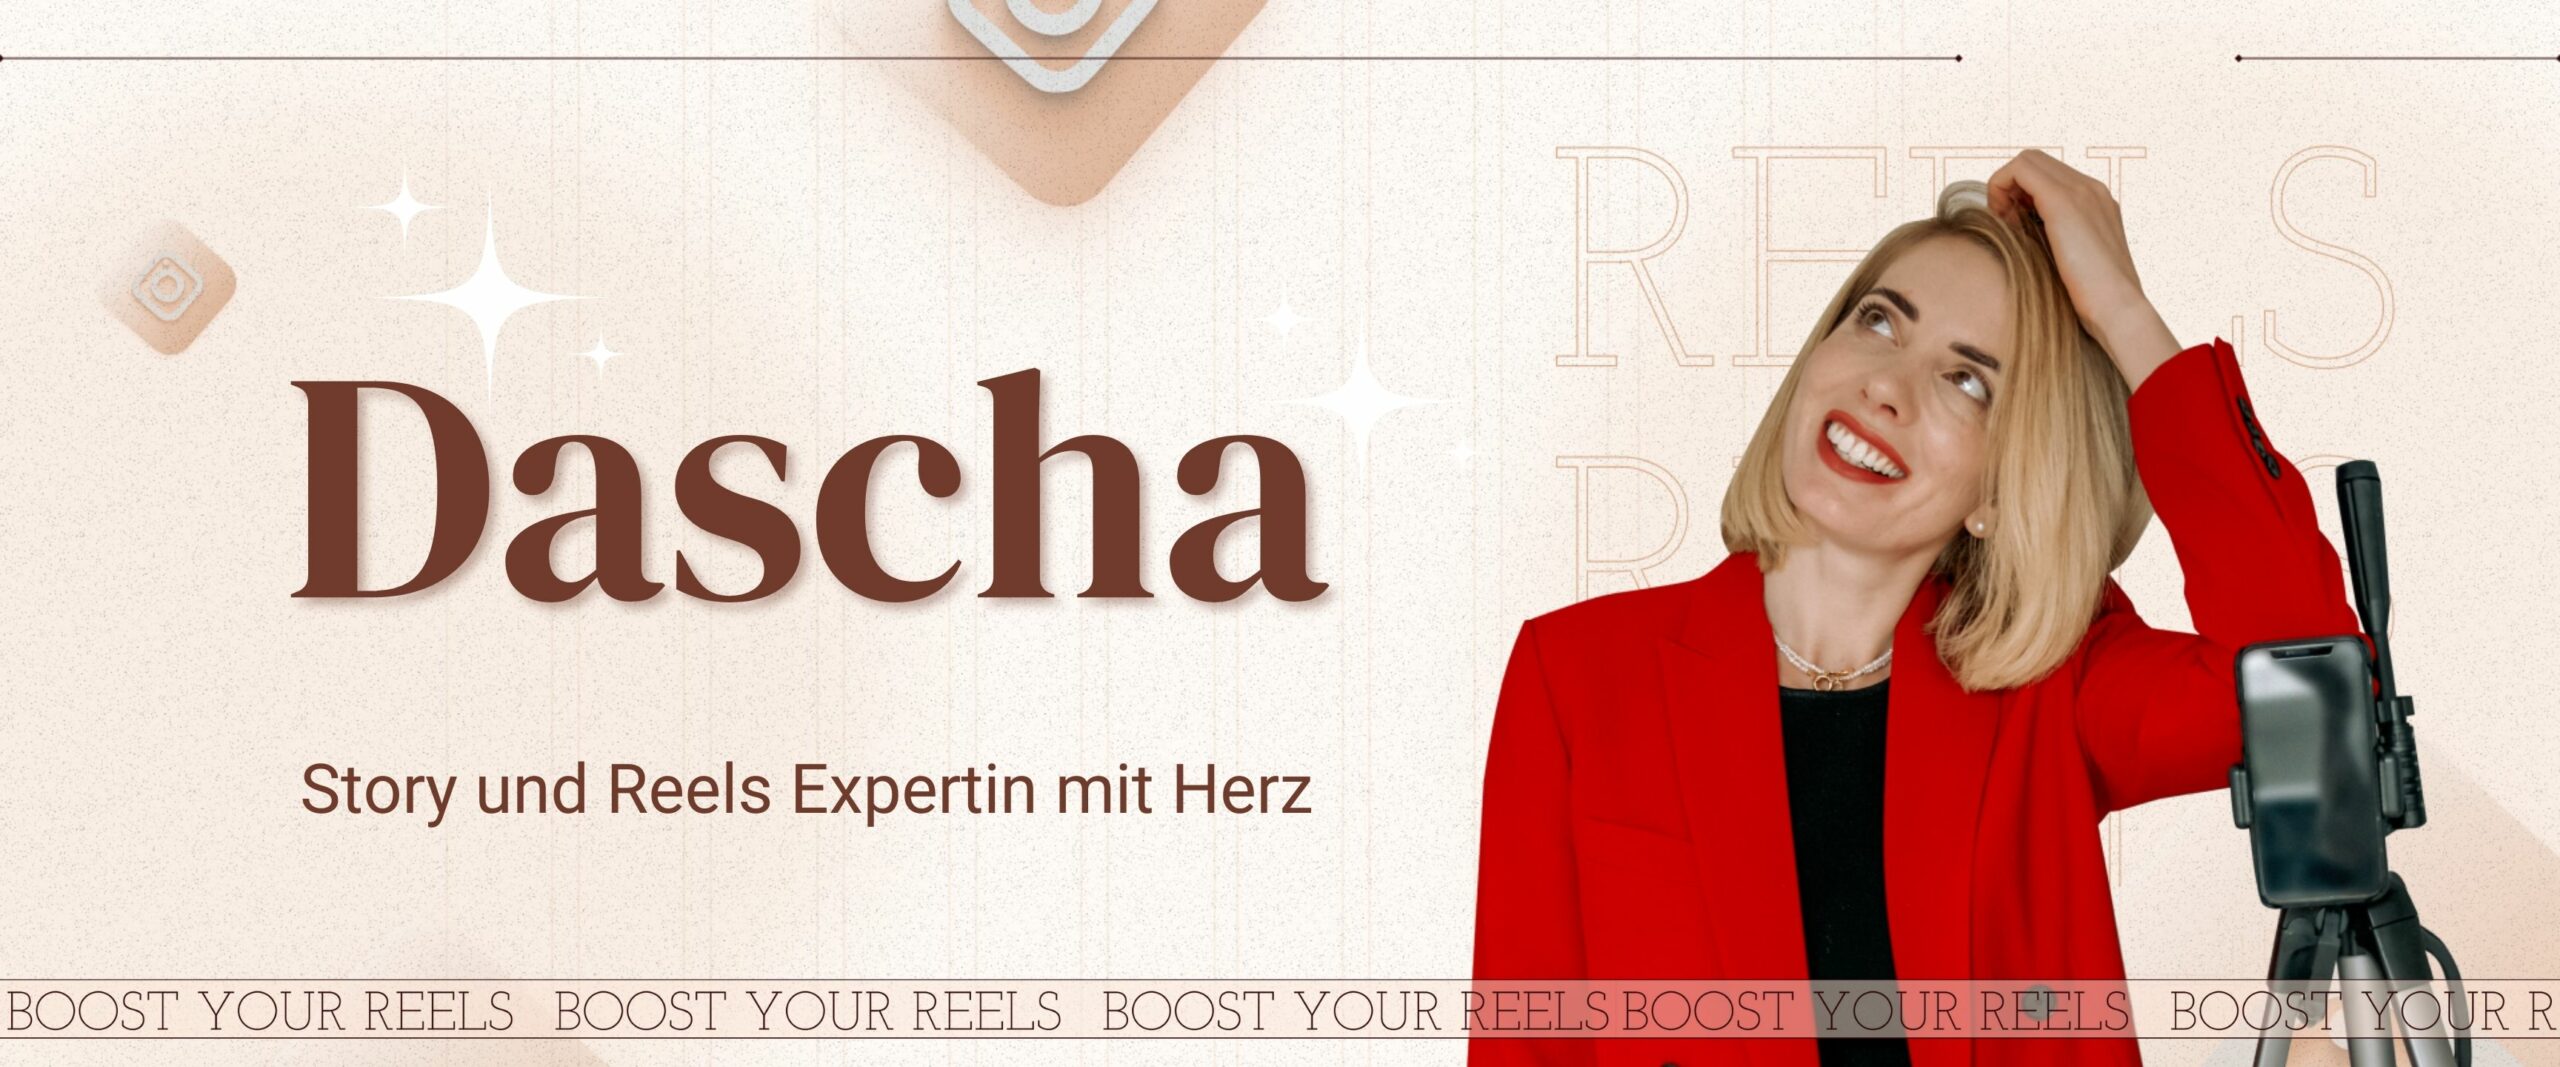 Dascha Reelsexpertin SocialMedia Storyexpertin